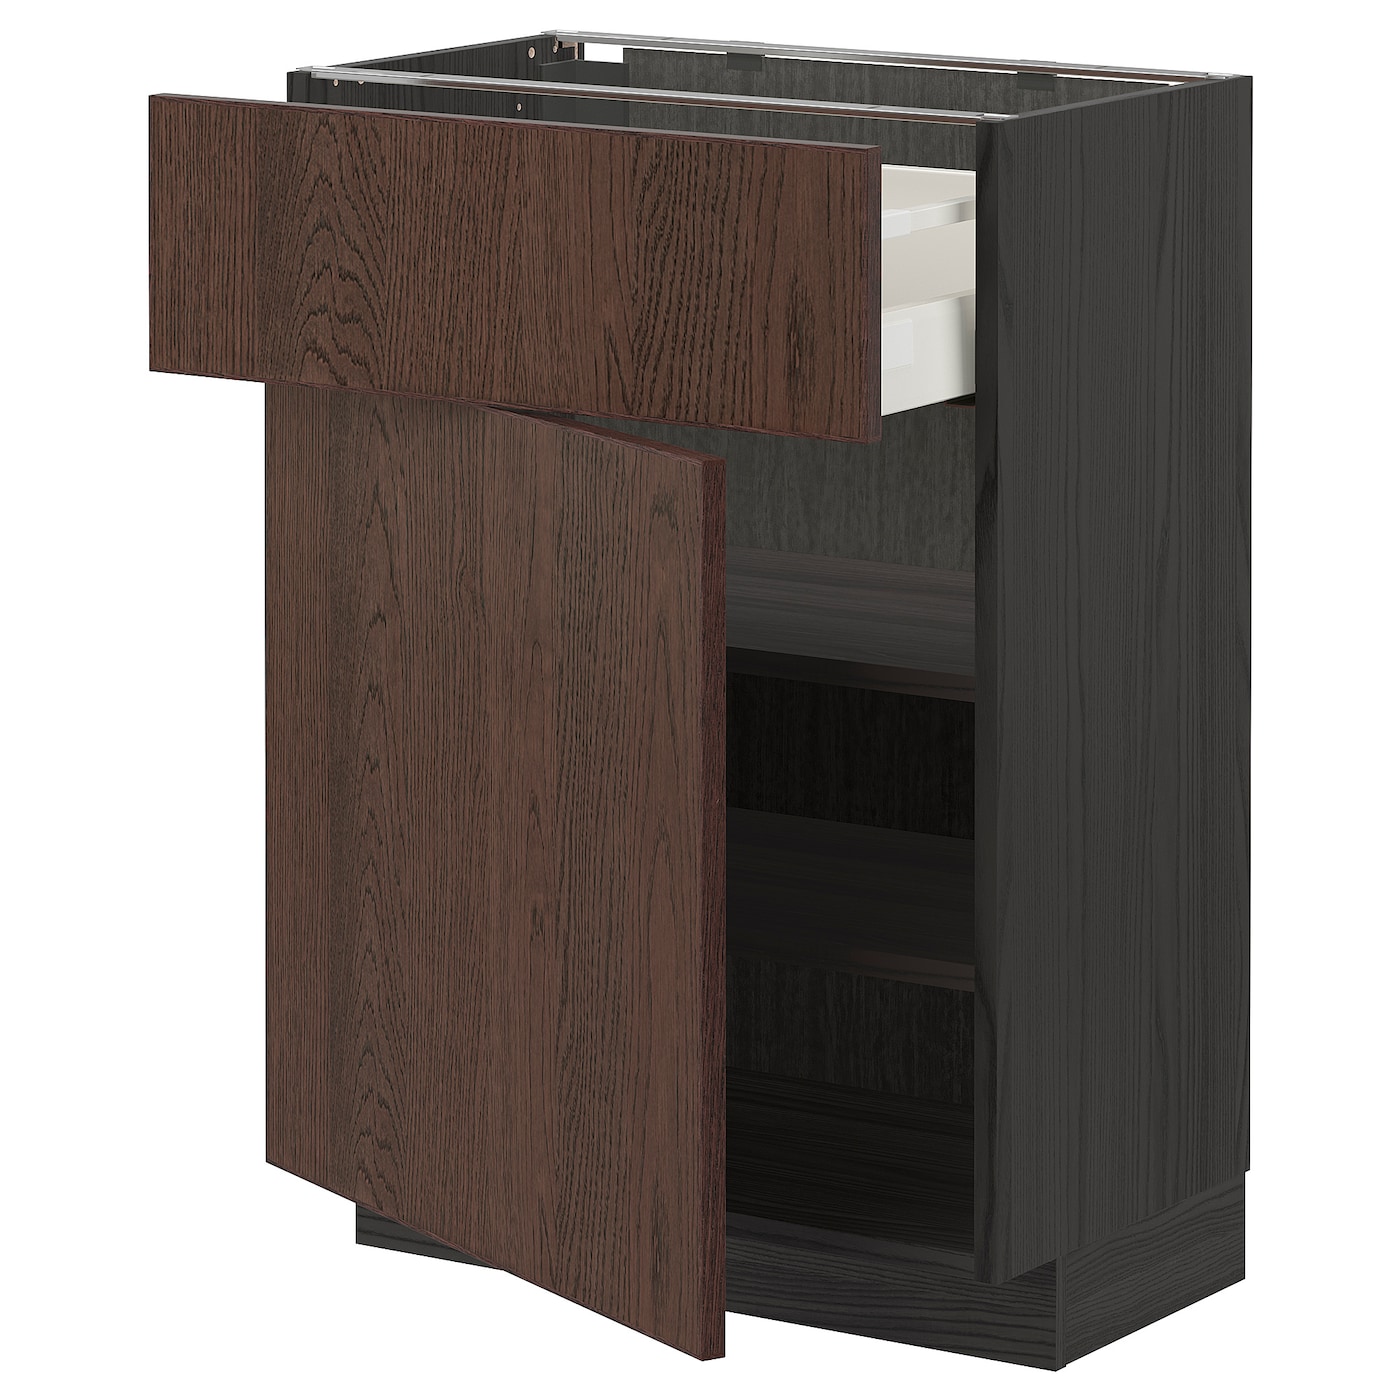 Напольный кухонный шкаф - IKEA METOD MAXIMERA, 88x39x60см, черный/коричневый, МЕТОД МАКСИМЕРА ИКЕА